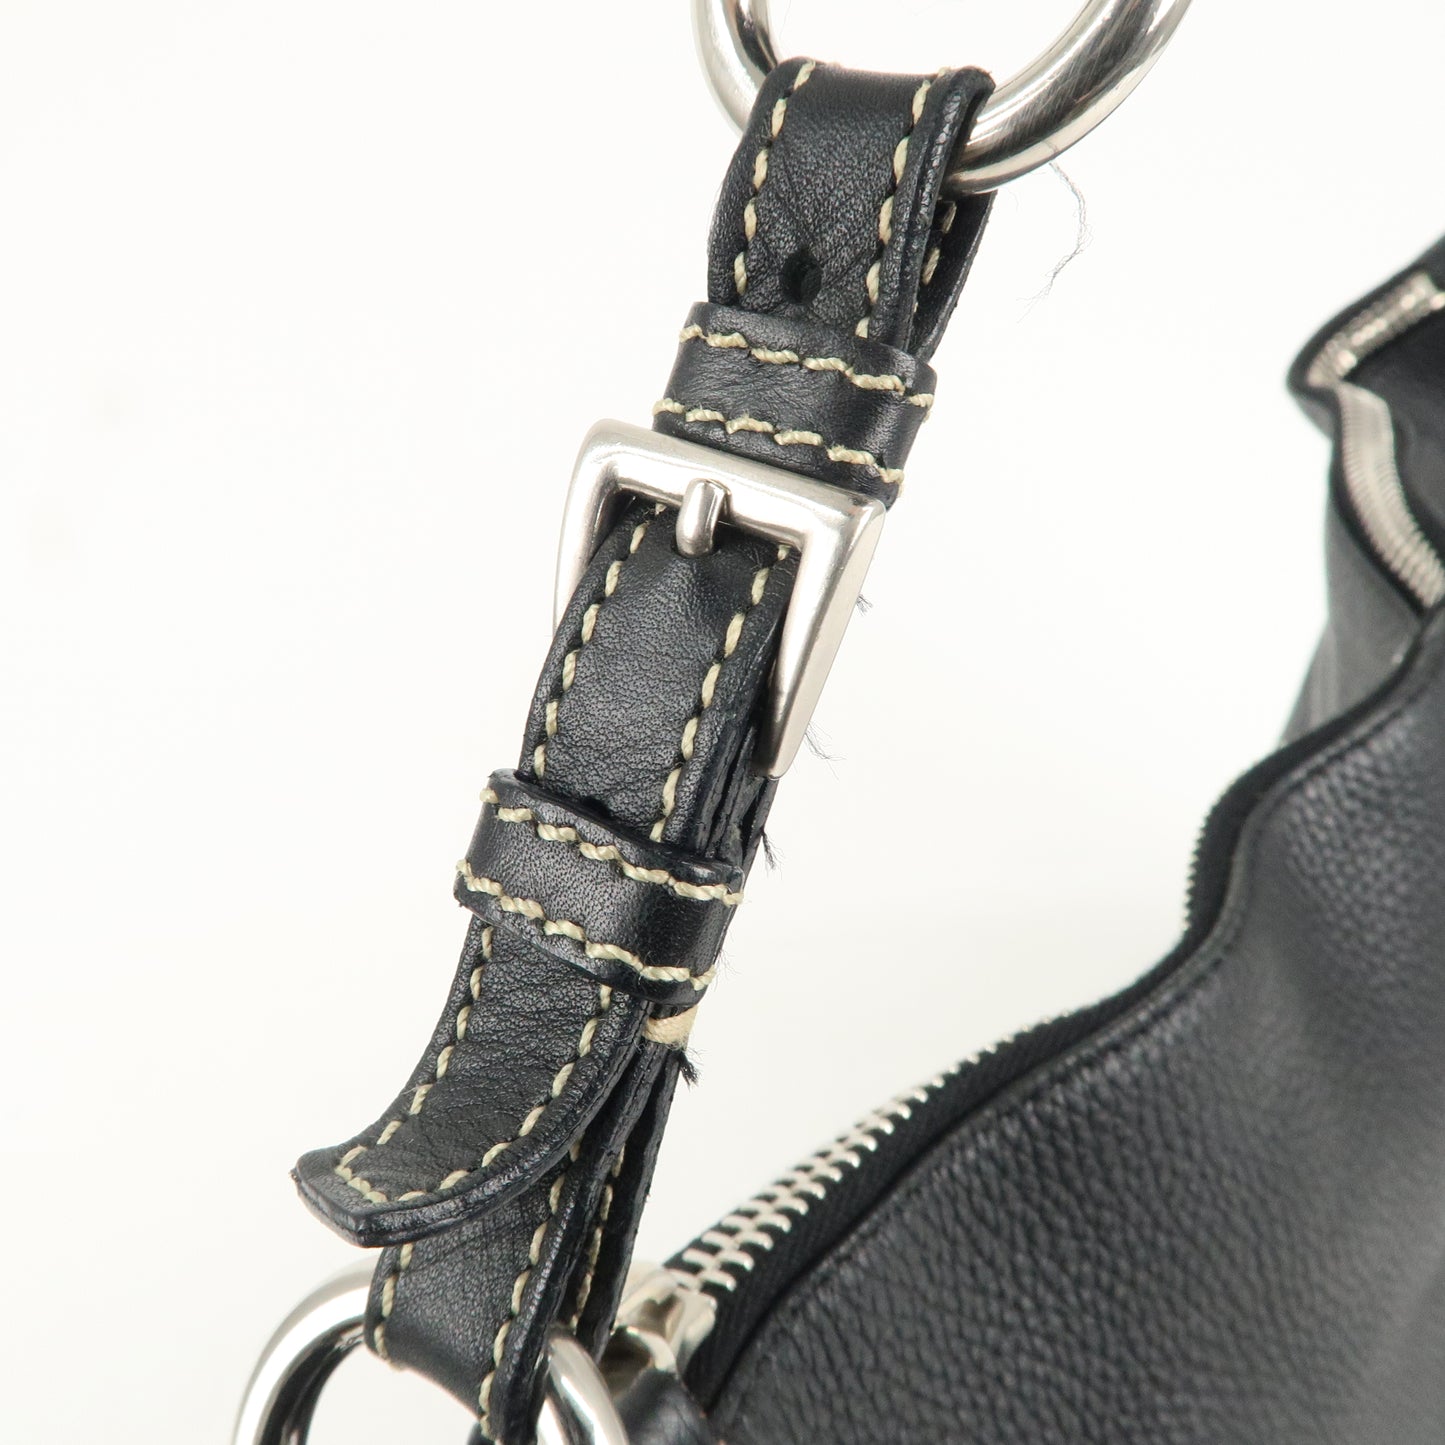 PRADA Logo Leather Shoulder Bag  Black Silver Hardware